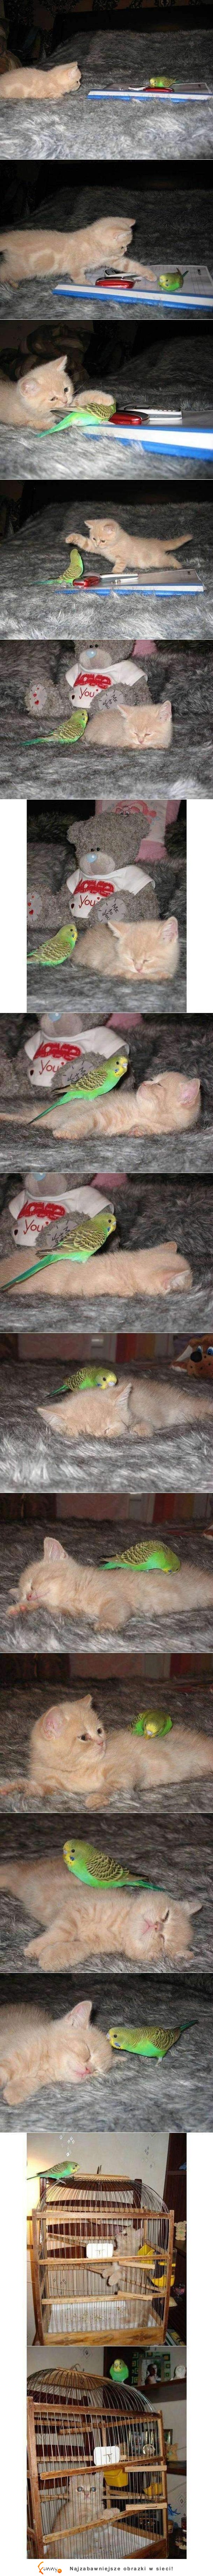 Kotek vs Papuga :D